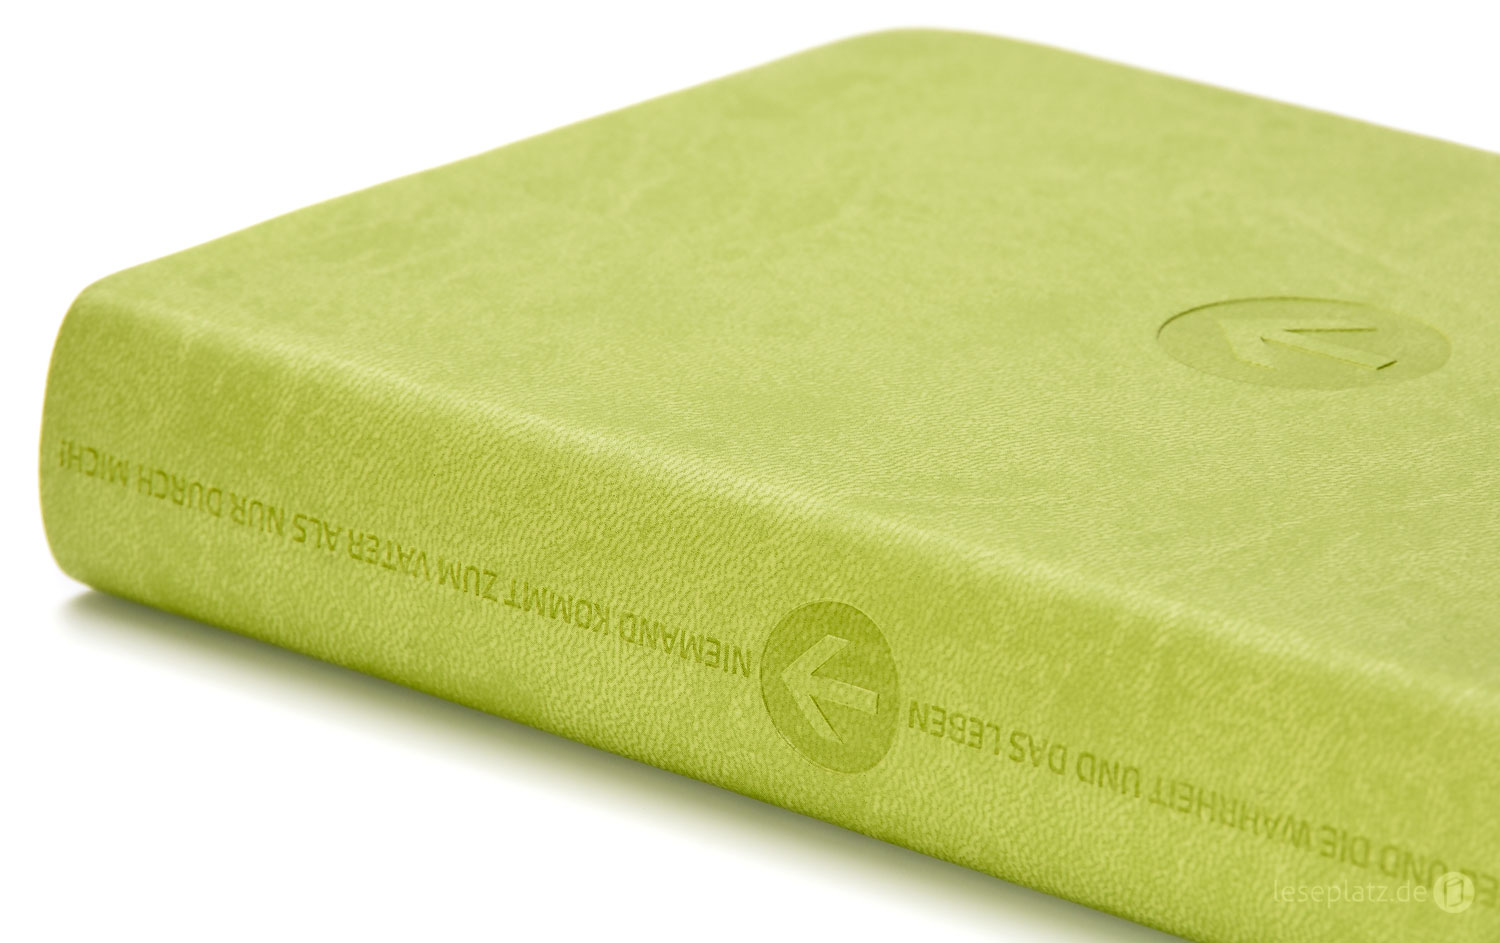 Schlachter 2000 Taschenausgabe - PU-Einband grün